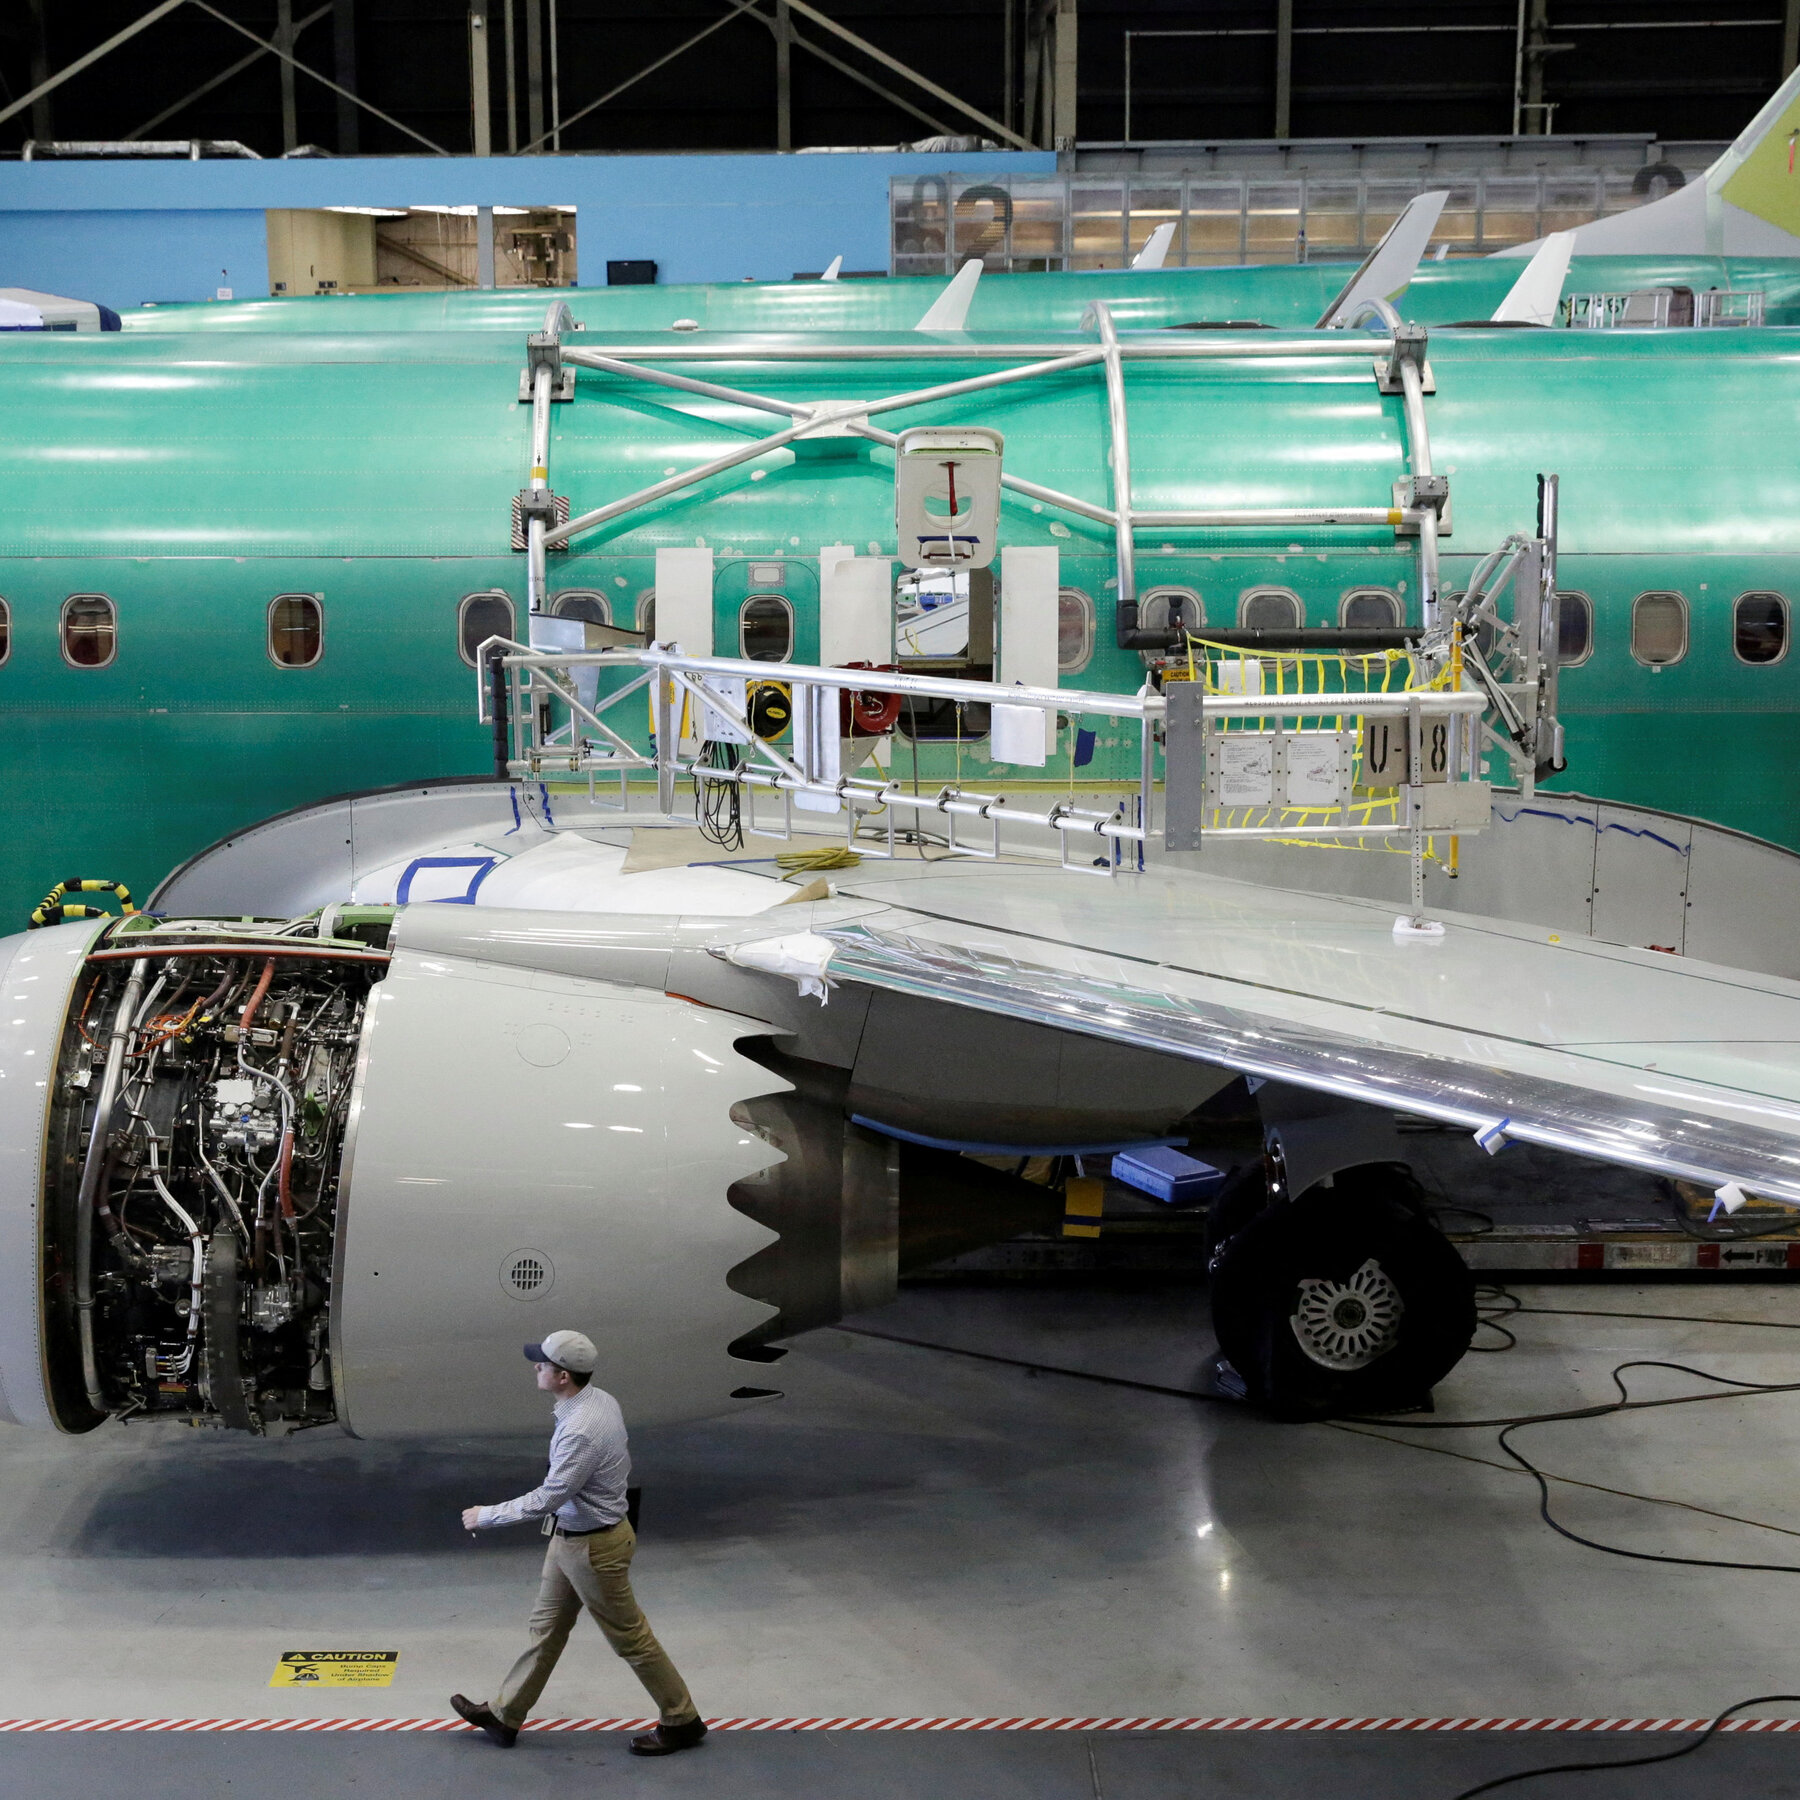 Boeing Loses $355 Million in Latest Quarter